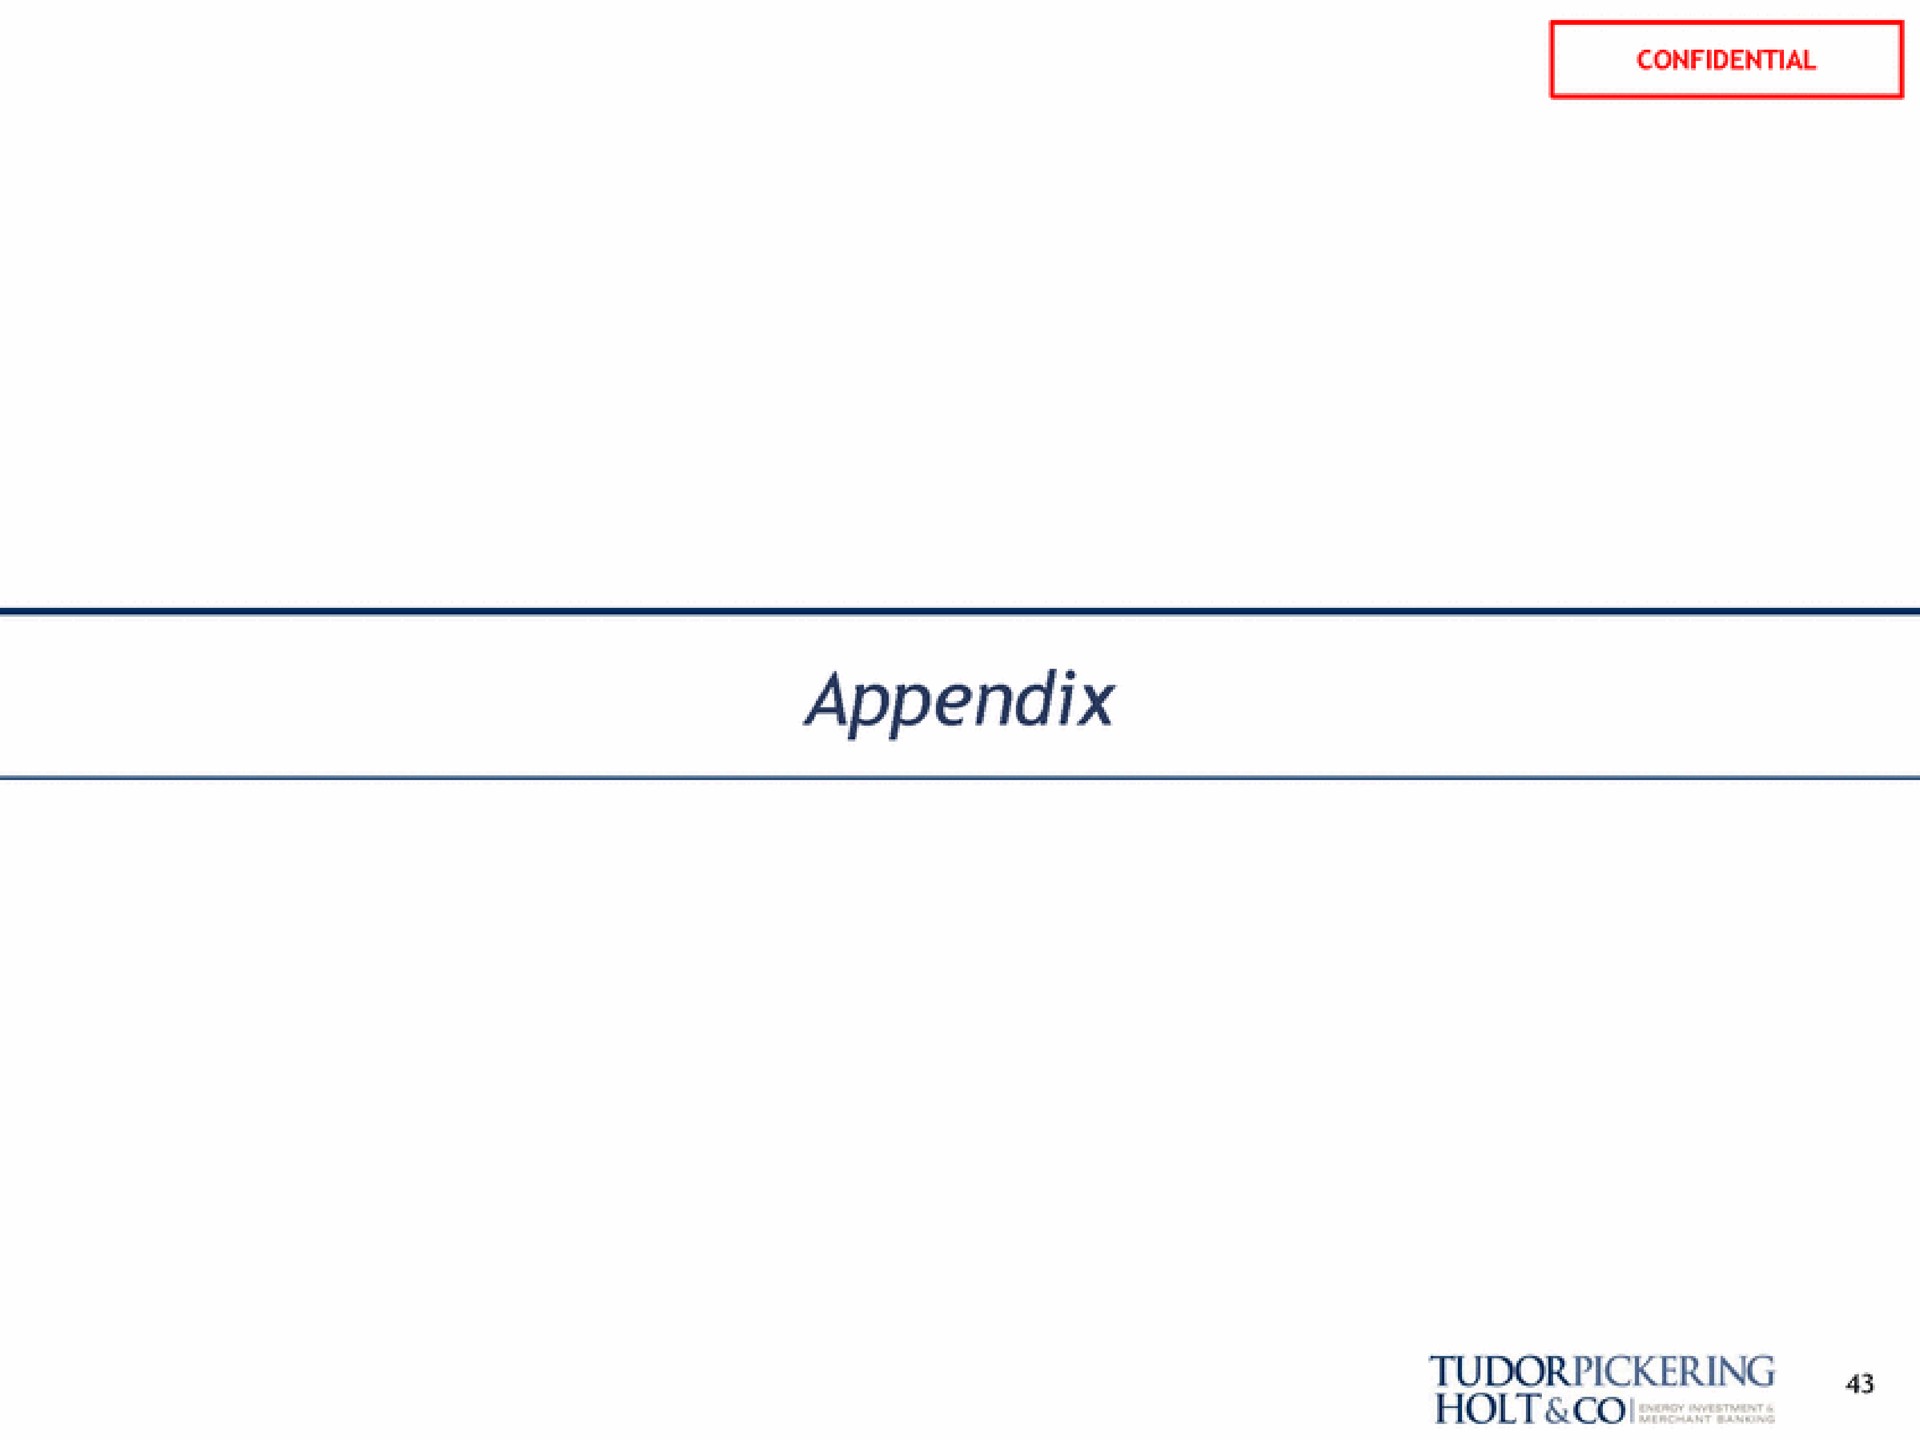 appendix | Tudor, Pickering, Holt & Co